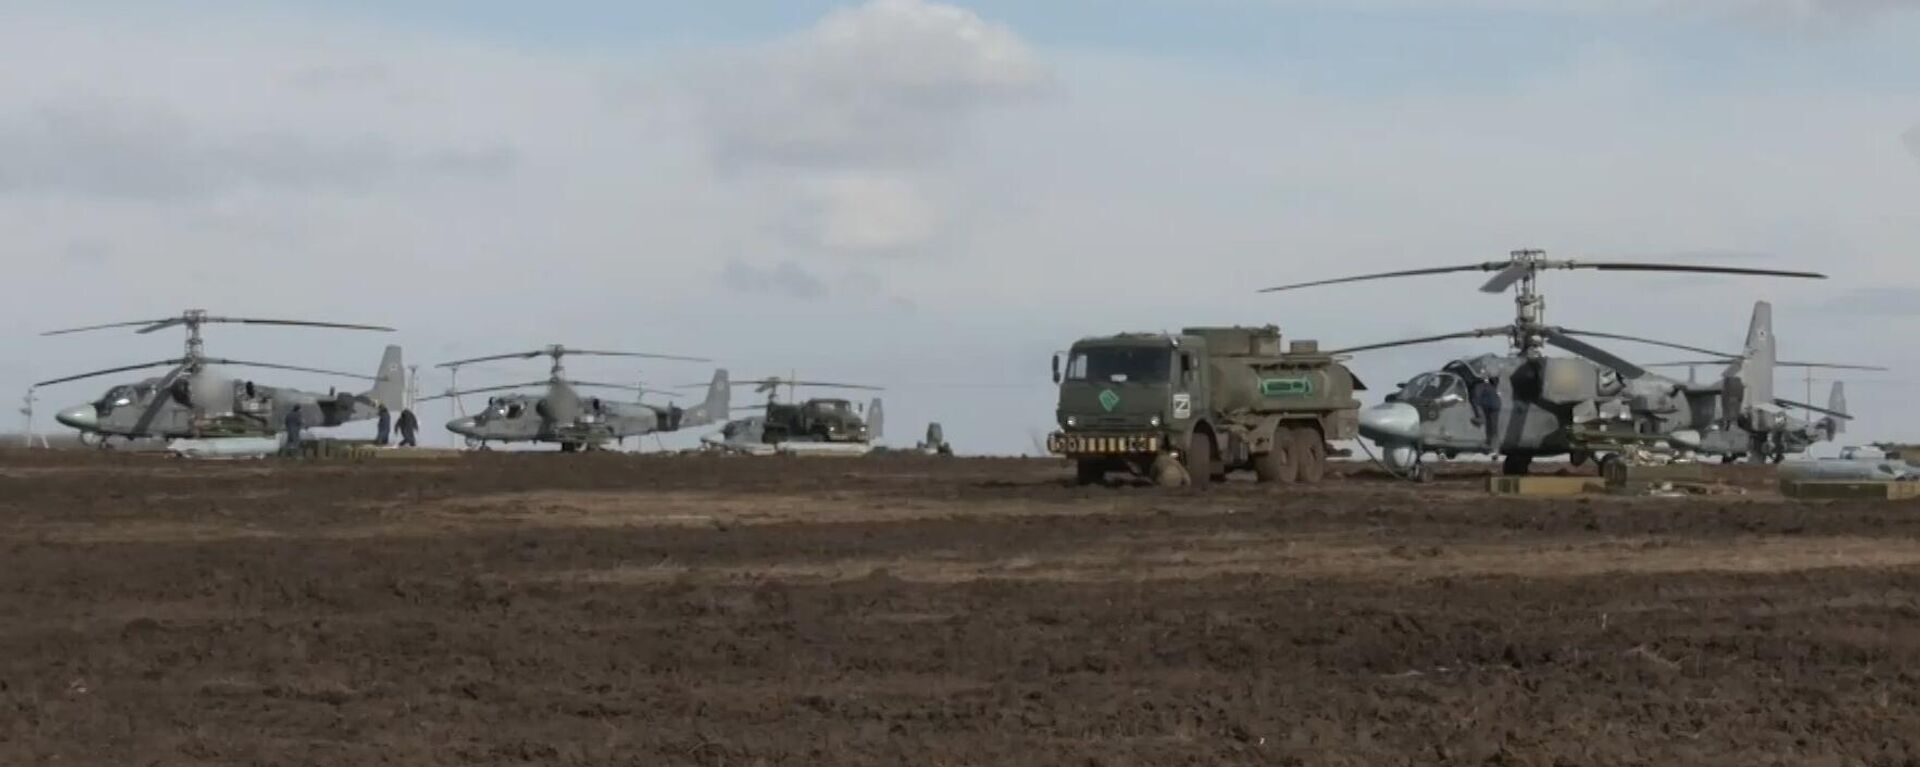 Ударные вертолеты Ка-52 ВКС РФ перед выполнением боевого задания в ходе специальной военной операции на Украине - Sputnik Латвия, 1920, 03.03.2022